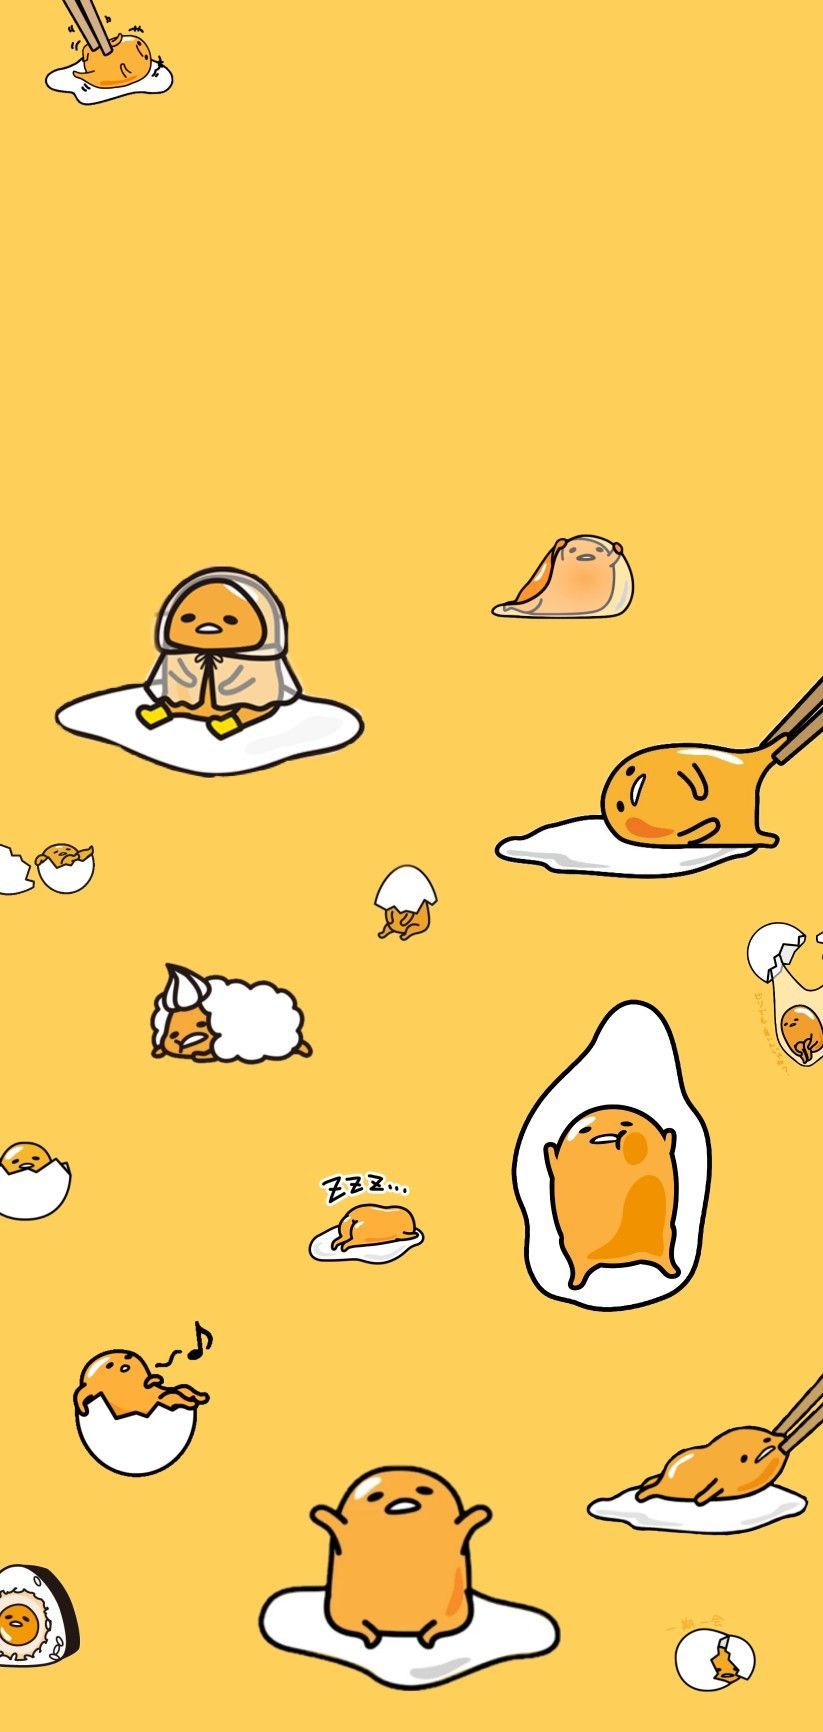 ヾ(＾-＾)ノ gudetama wallpaper !!. Cute cartoon wallpaper, Hello kitty iphone wallpaper, iPhone wallpaper yellow